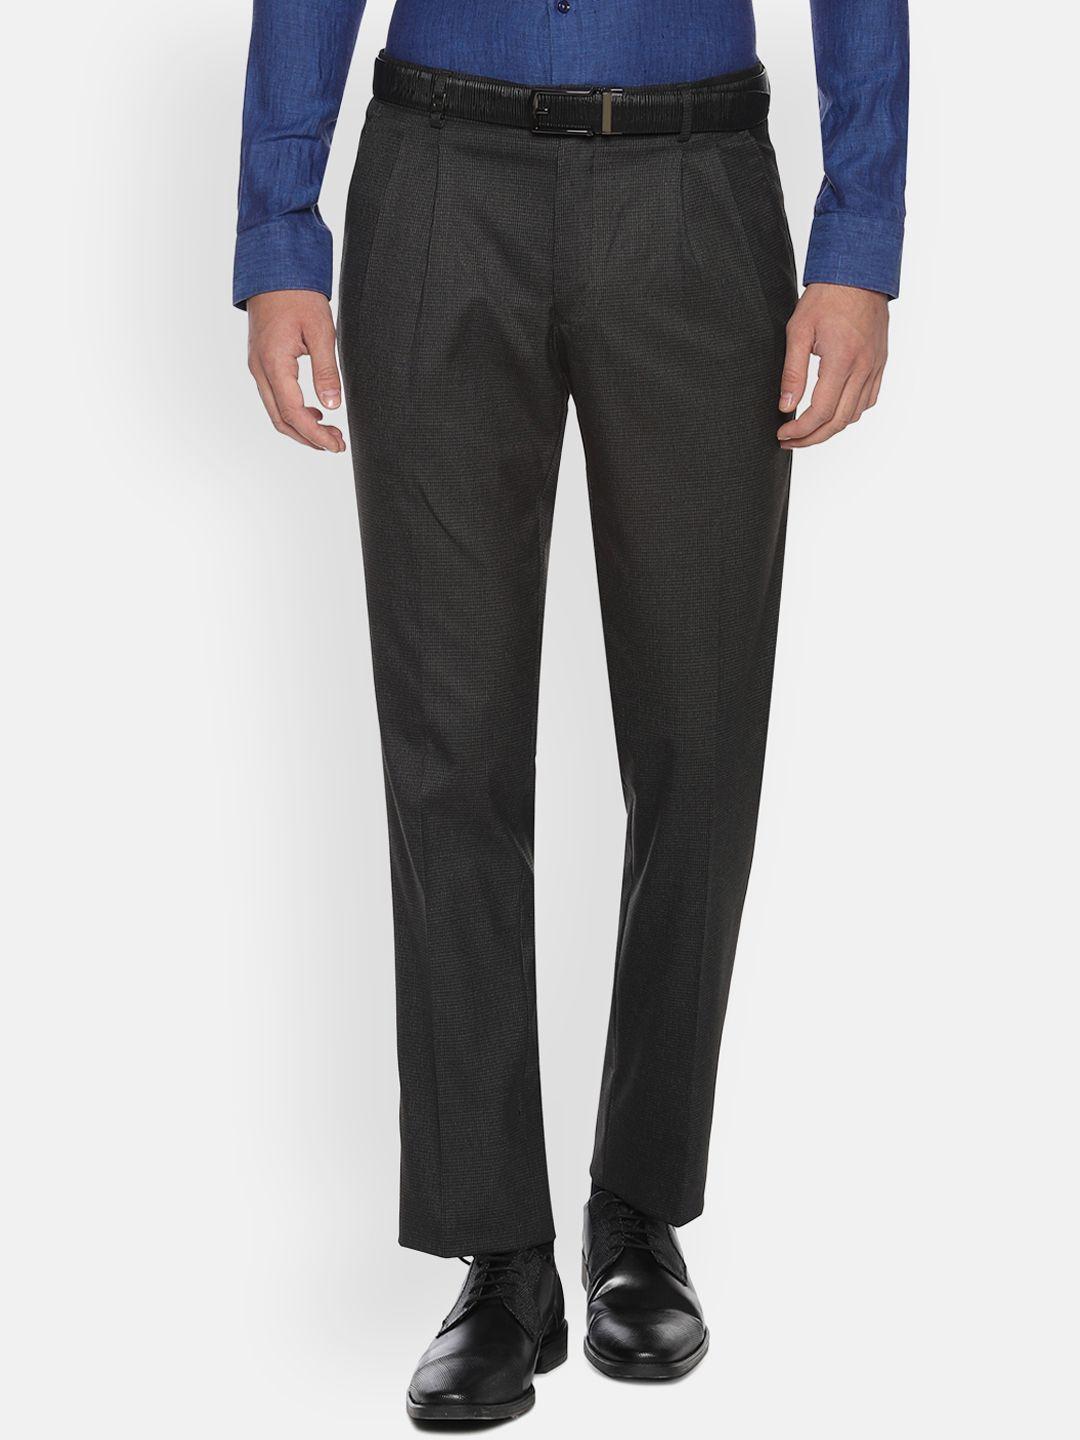 louis-philippe-men-charcoal-grey-regular-fit-self-design-formal-trousers